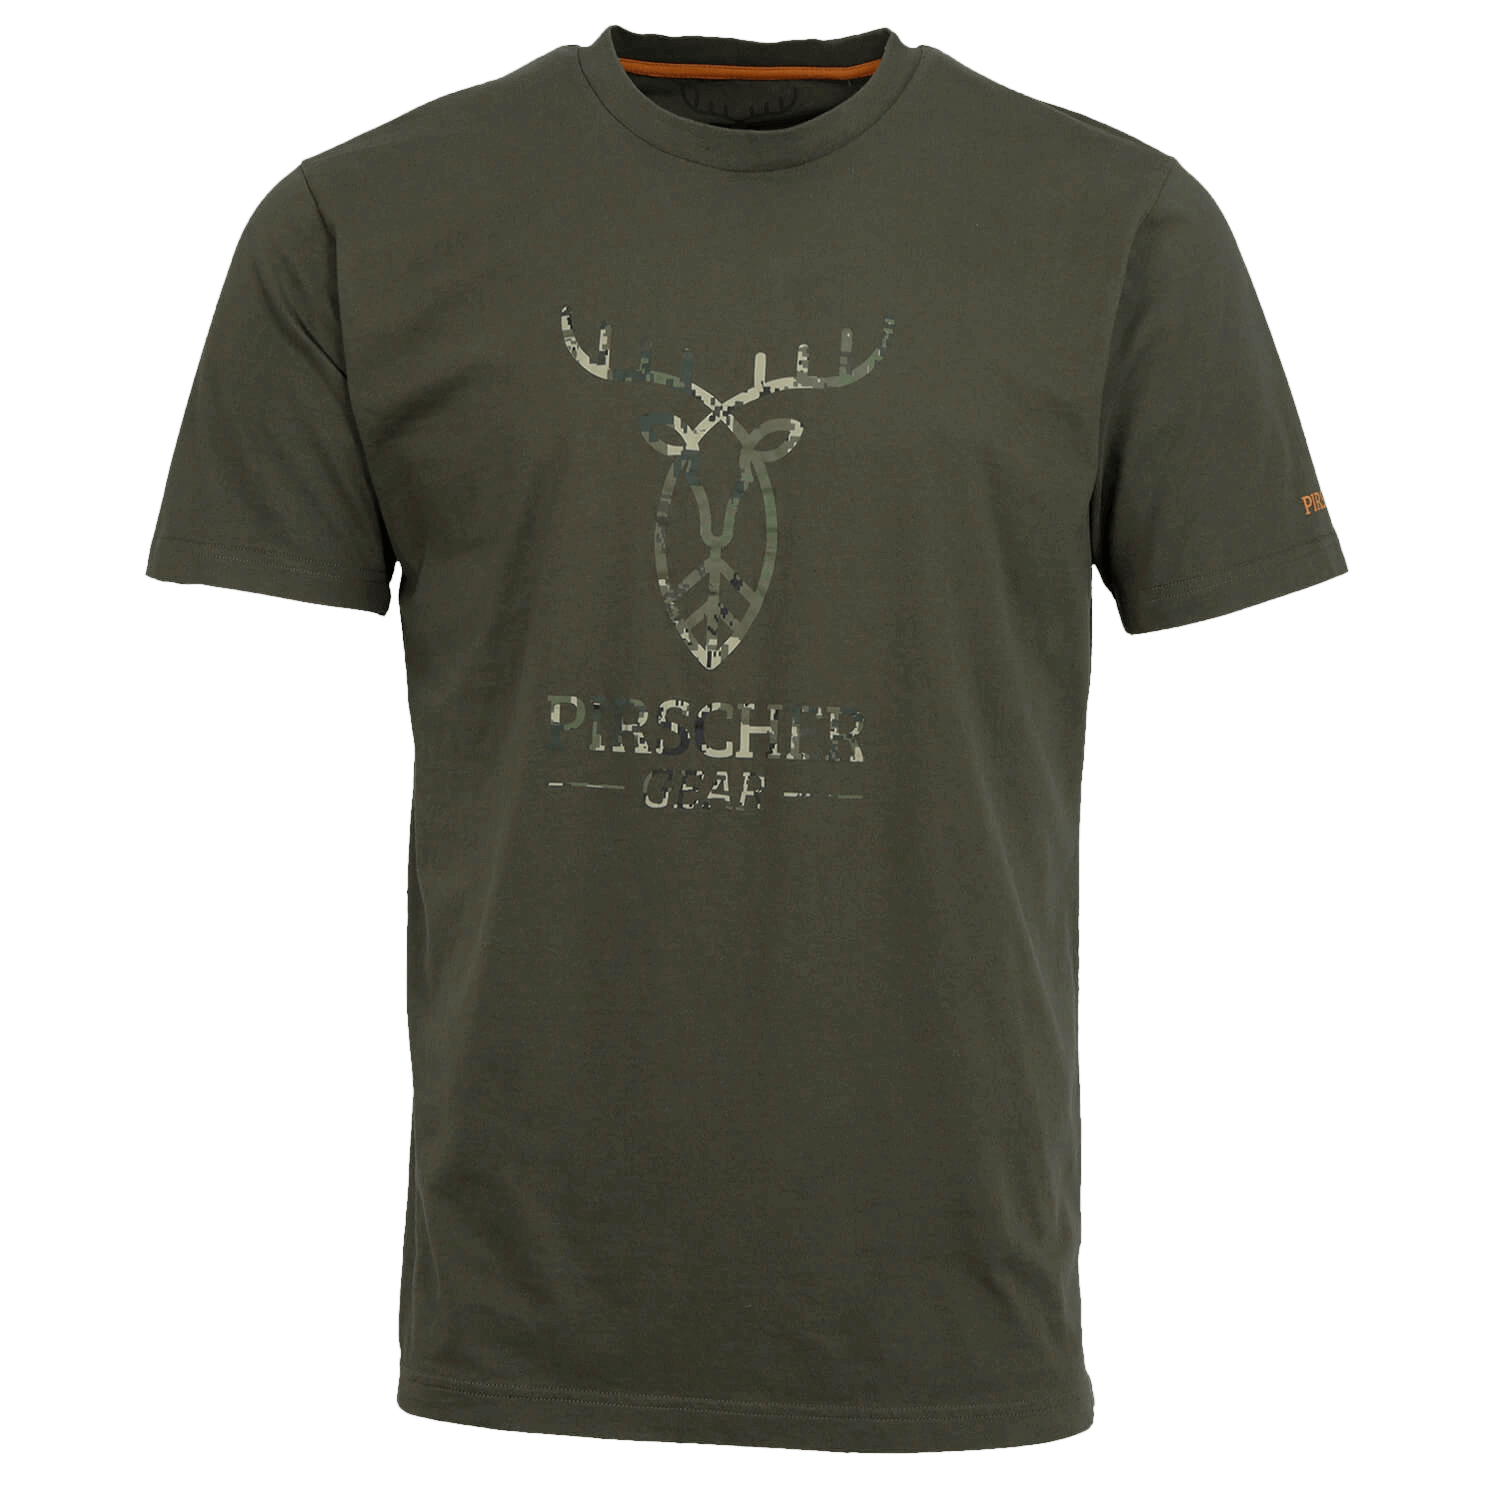 Pirscher Gear T-Shirt Full Logo (Optimax) - Shirts